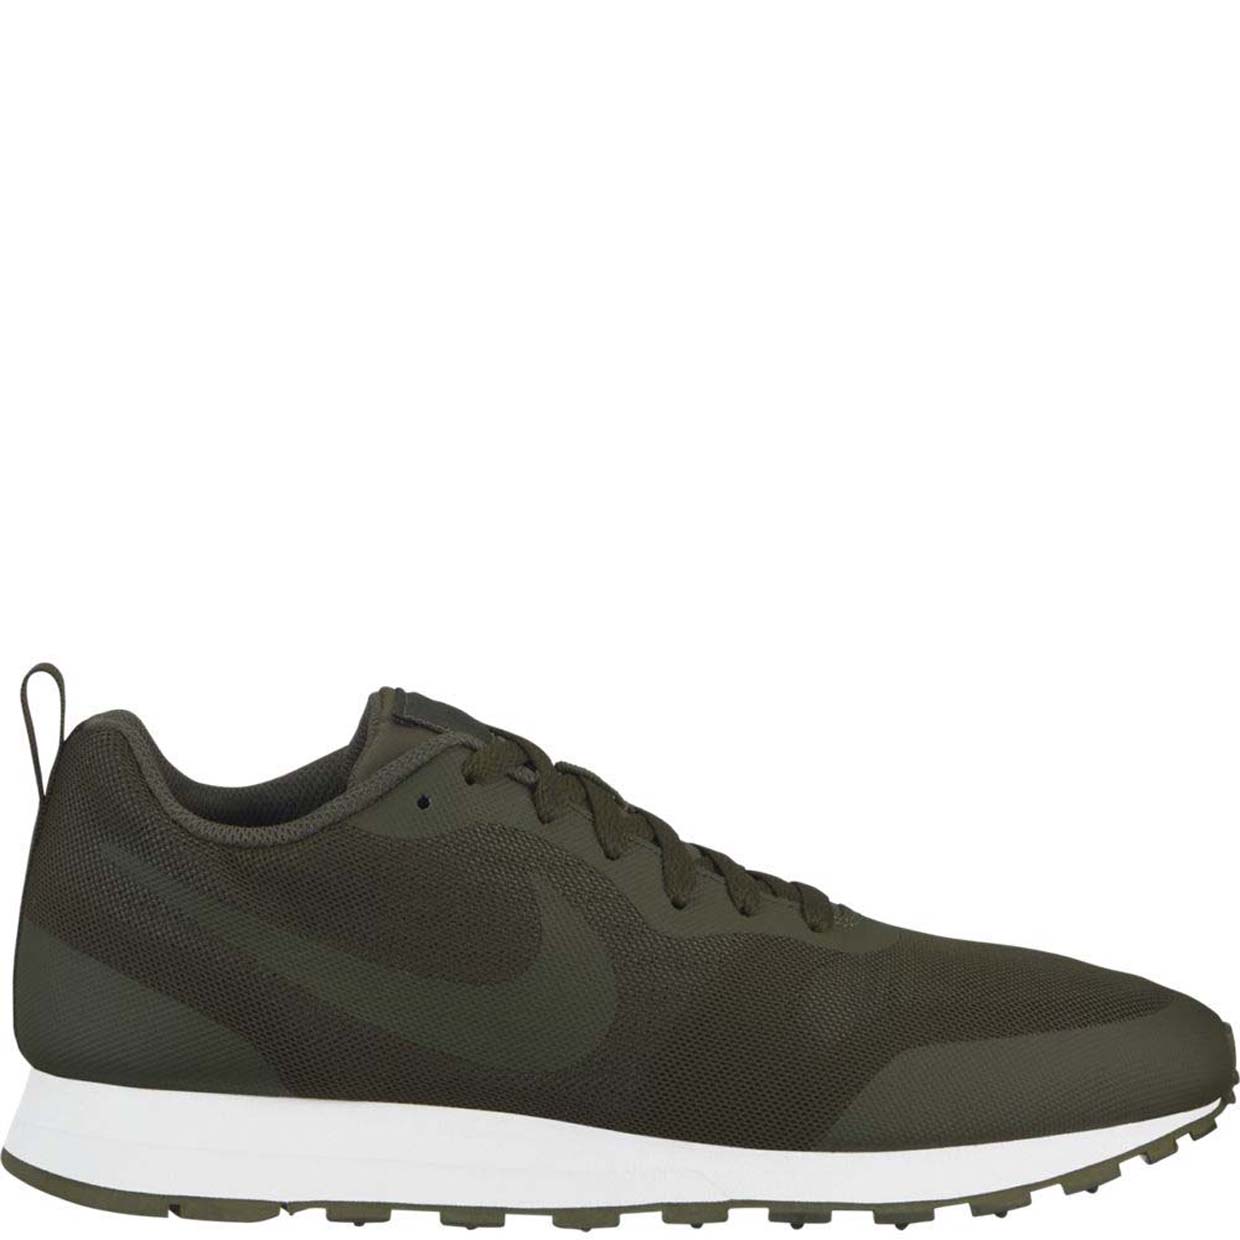 Мужские кроссовки Nike Md Runner 2 AO0265-300